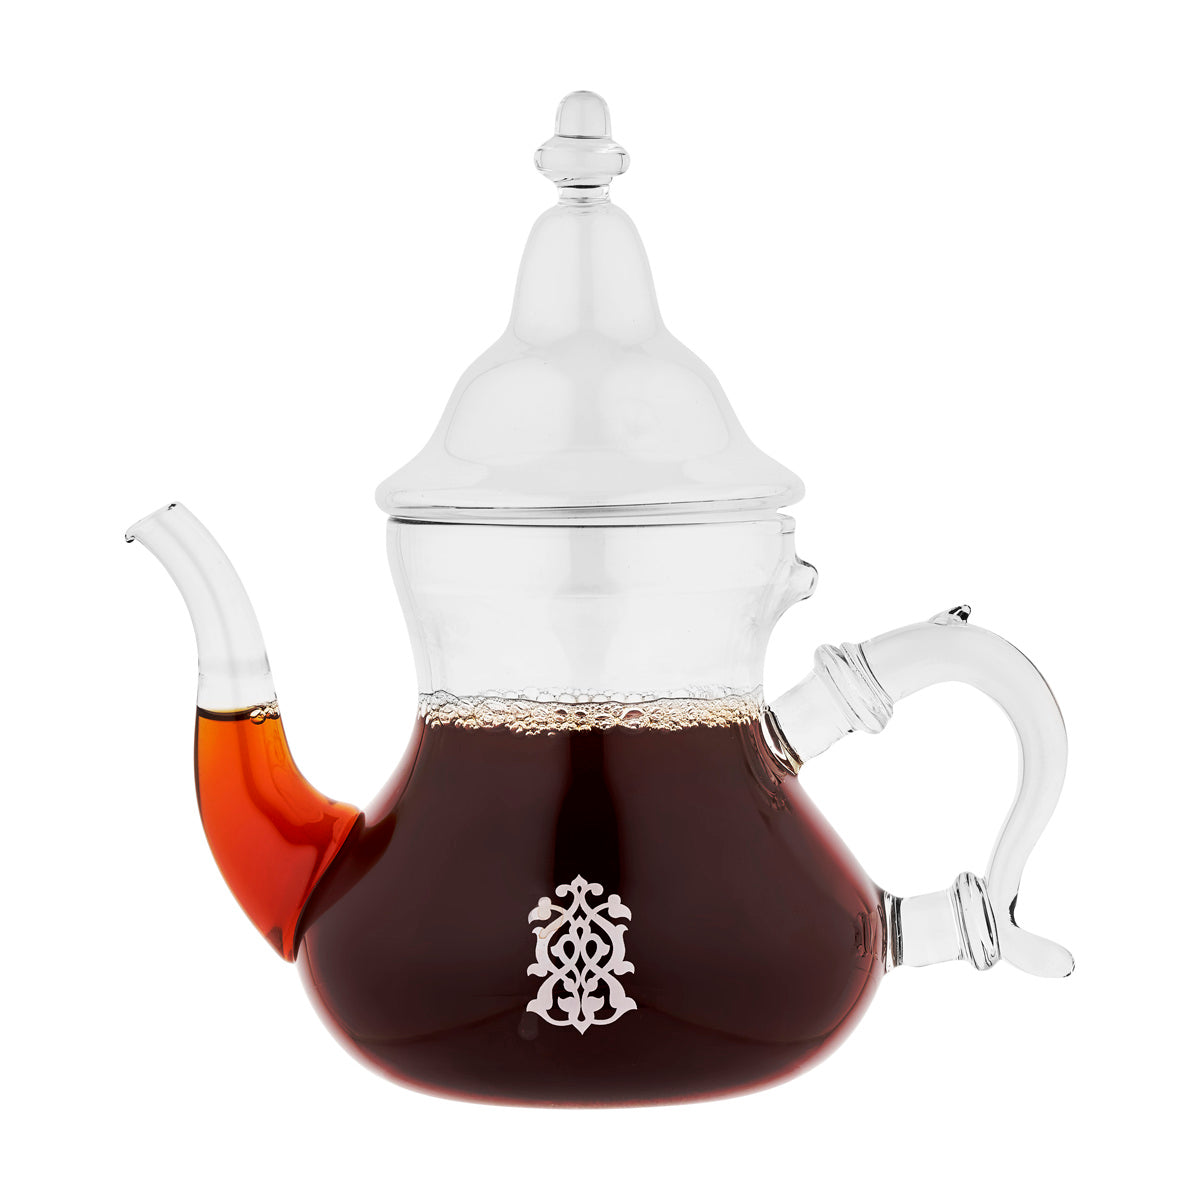 Service de théière en verre marocain avec 2 tasses en verre